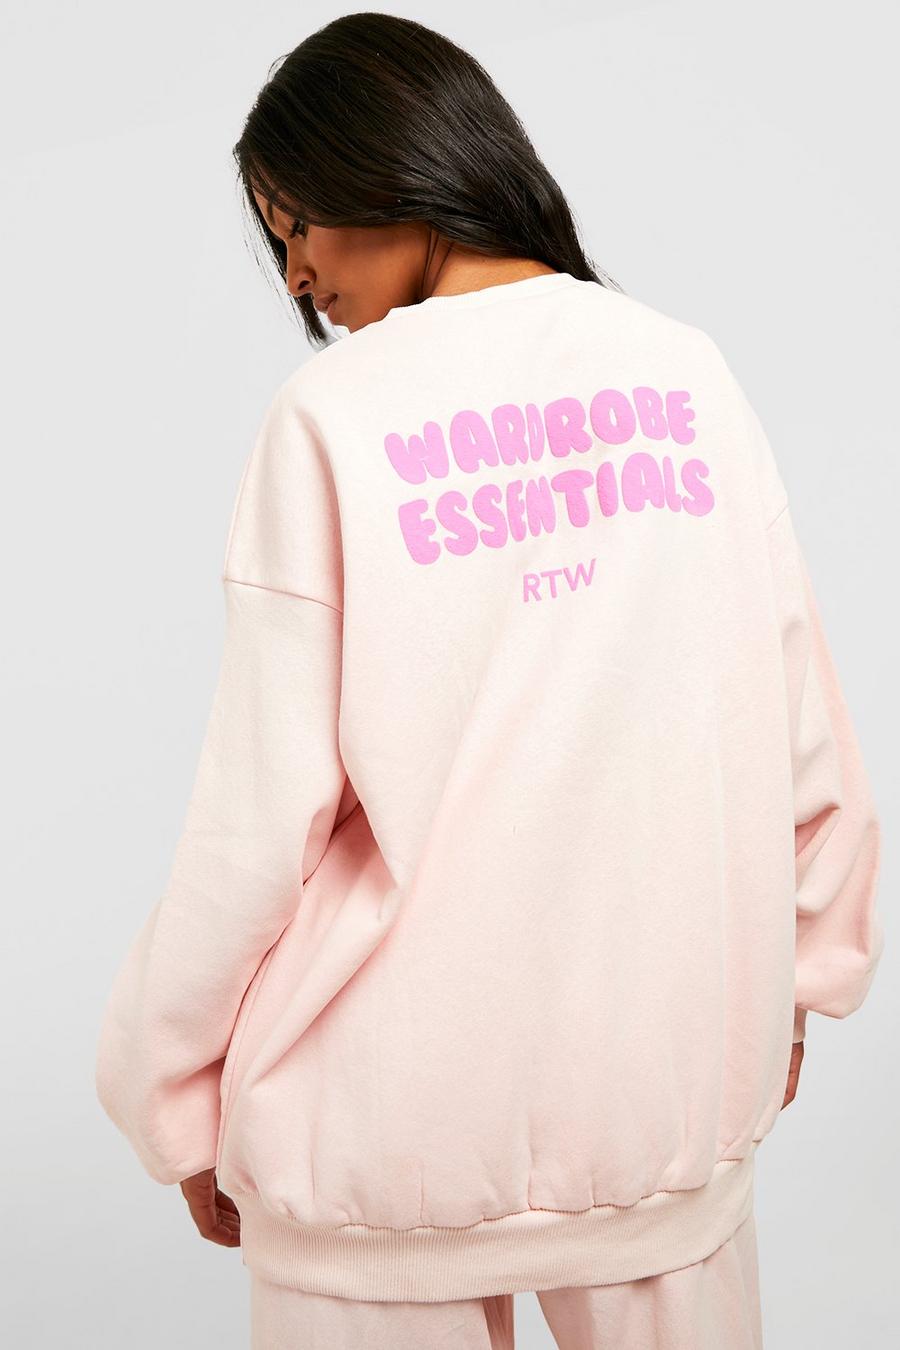 Tall Oversize Sweatshirt mit Wardrobe Essentials Slogan, Pink rose